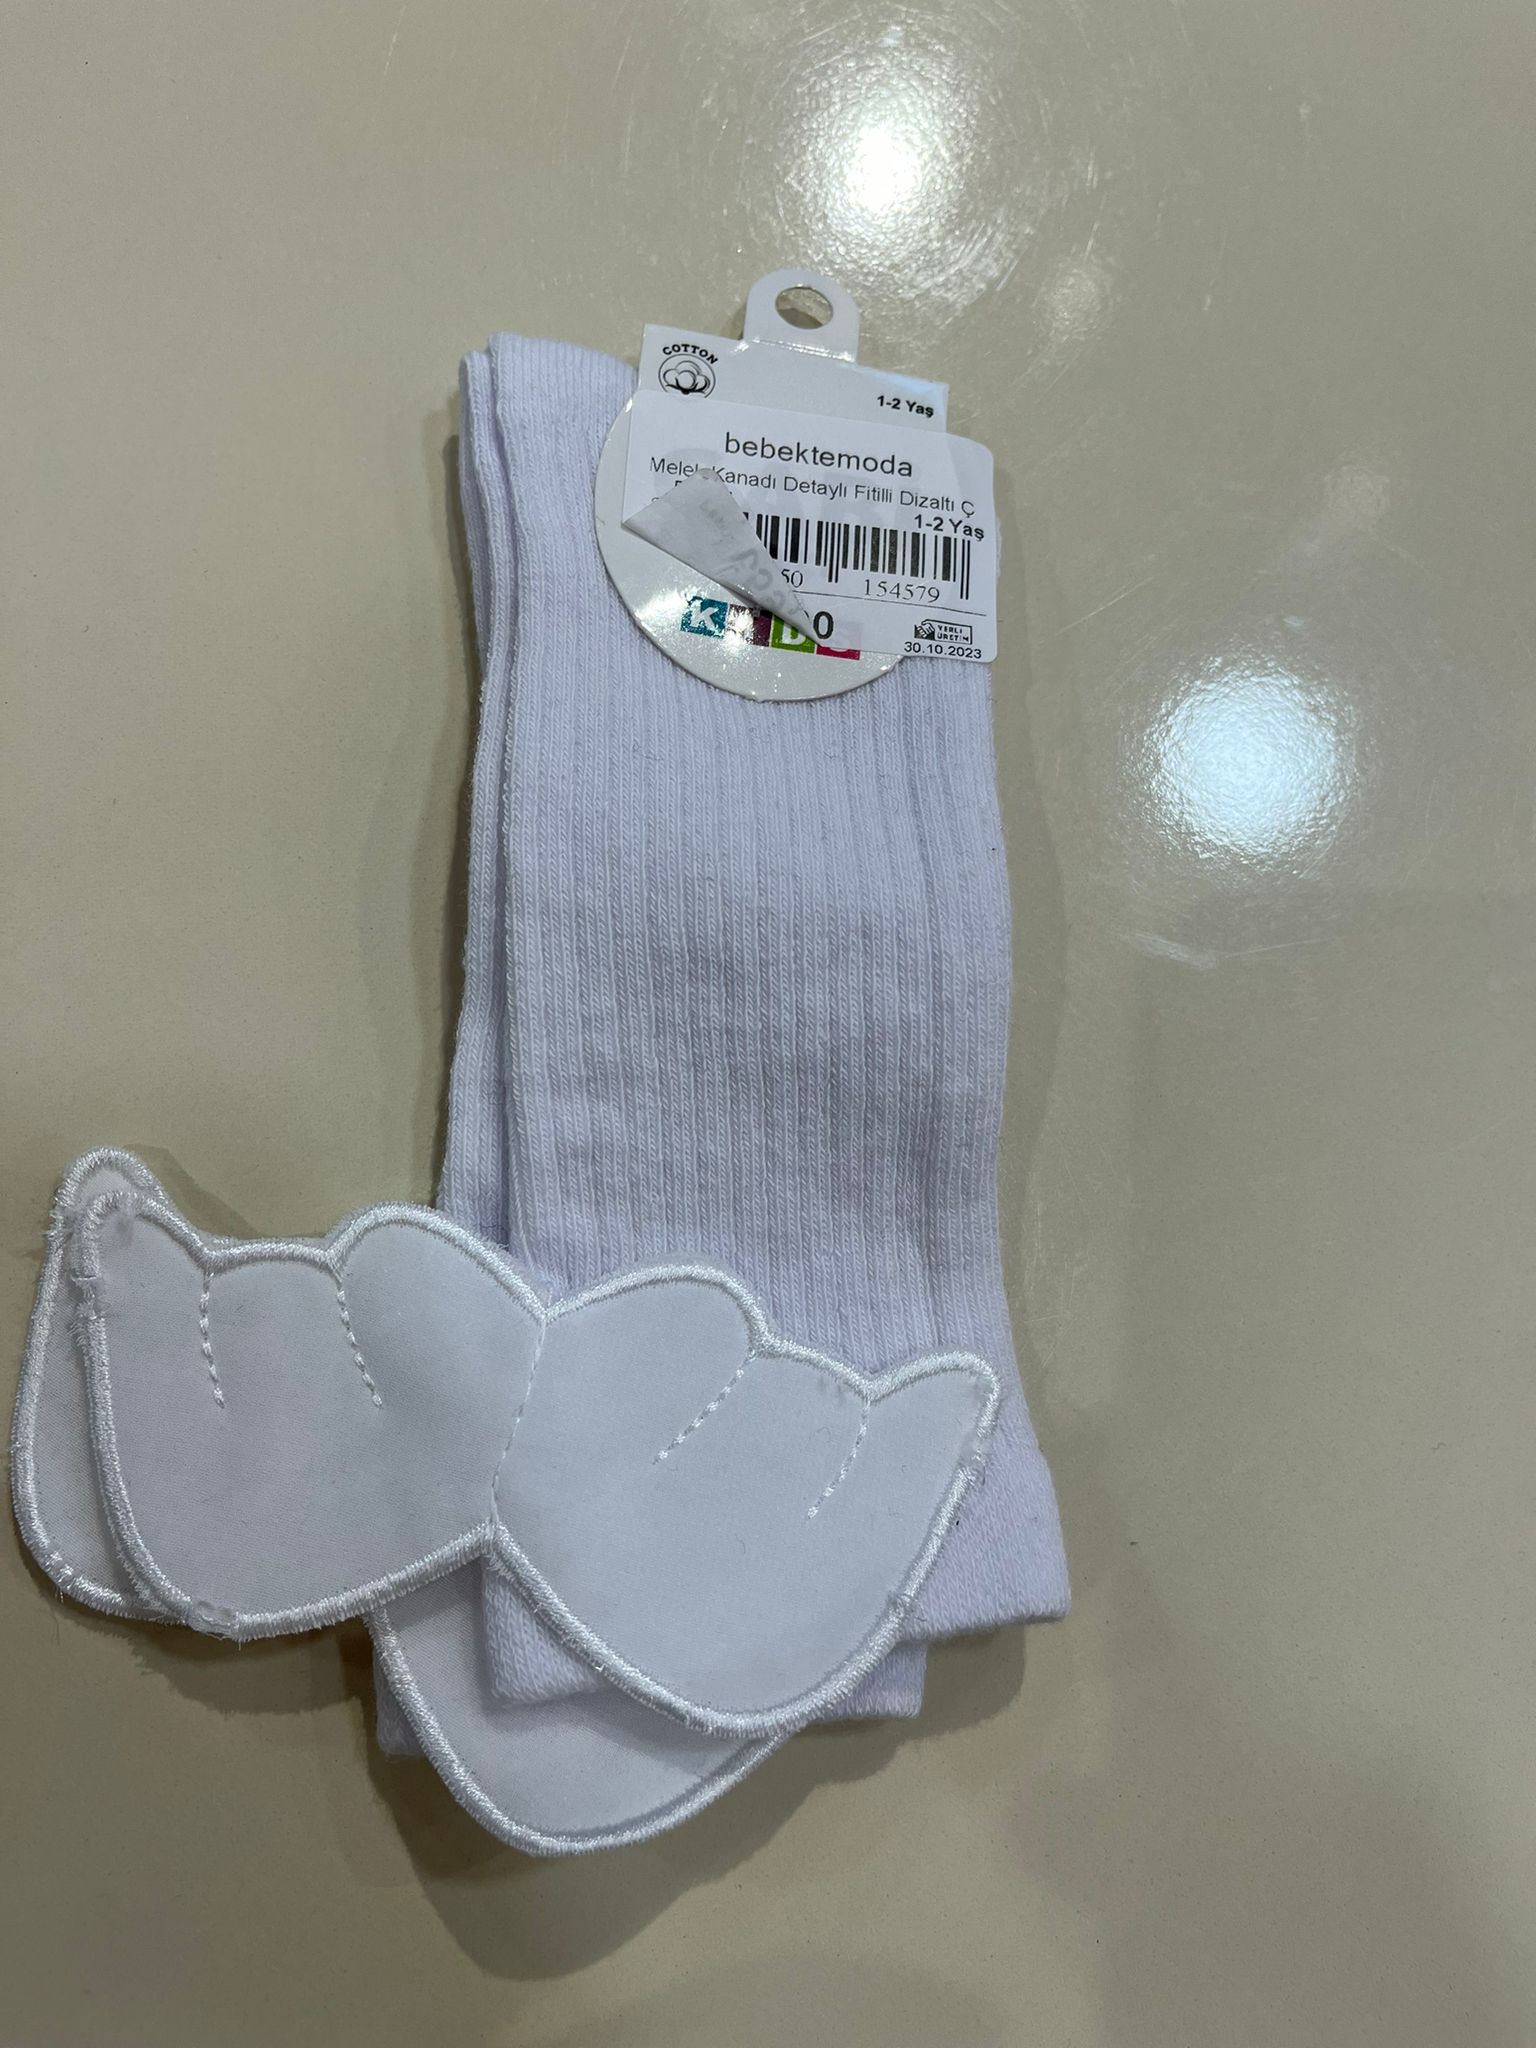 Melek Kanadı Detaylı Fitilli Dizaltı Çorap Beyaz